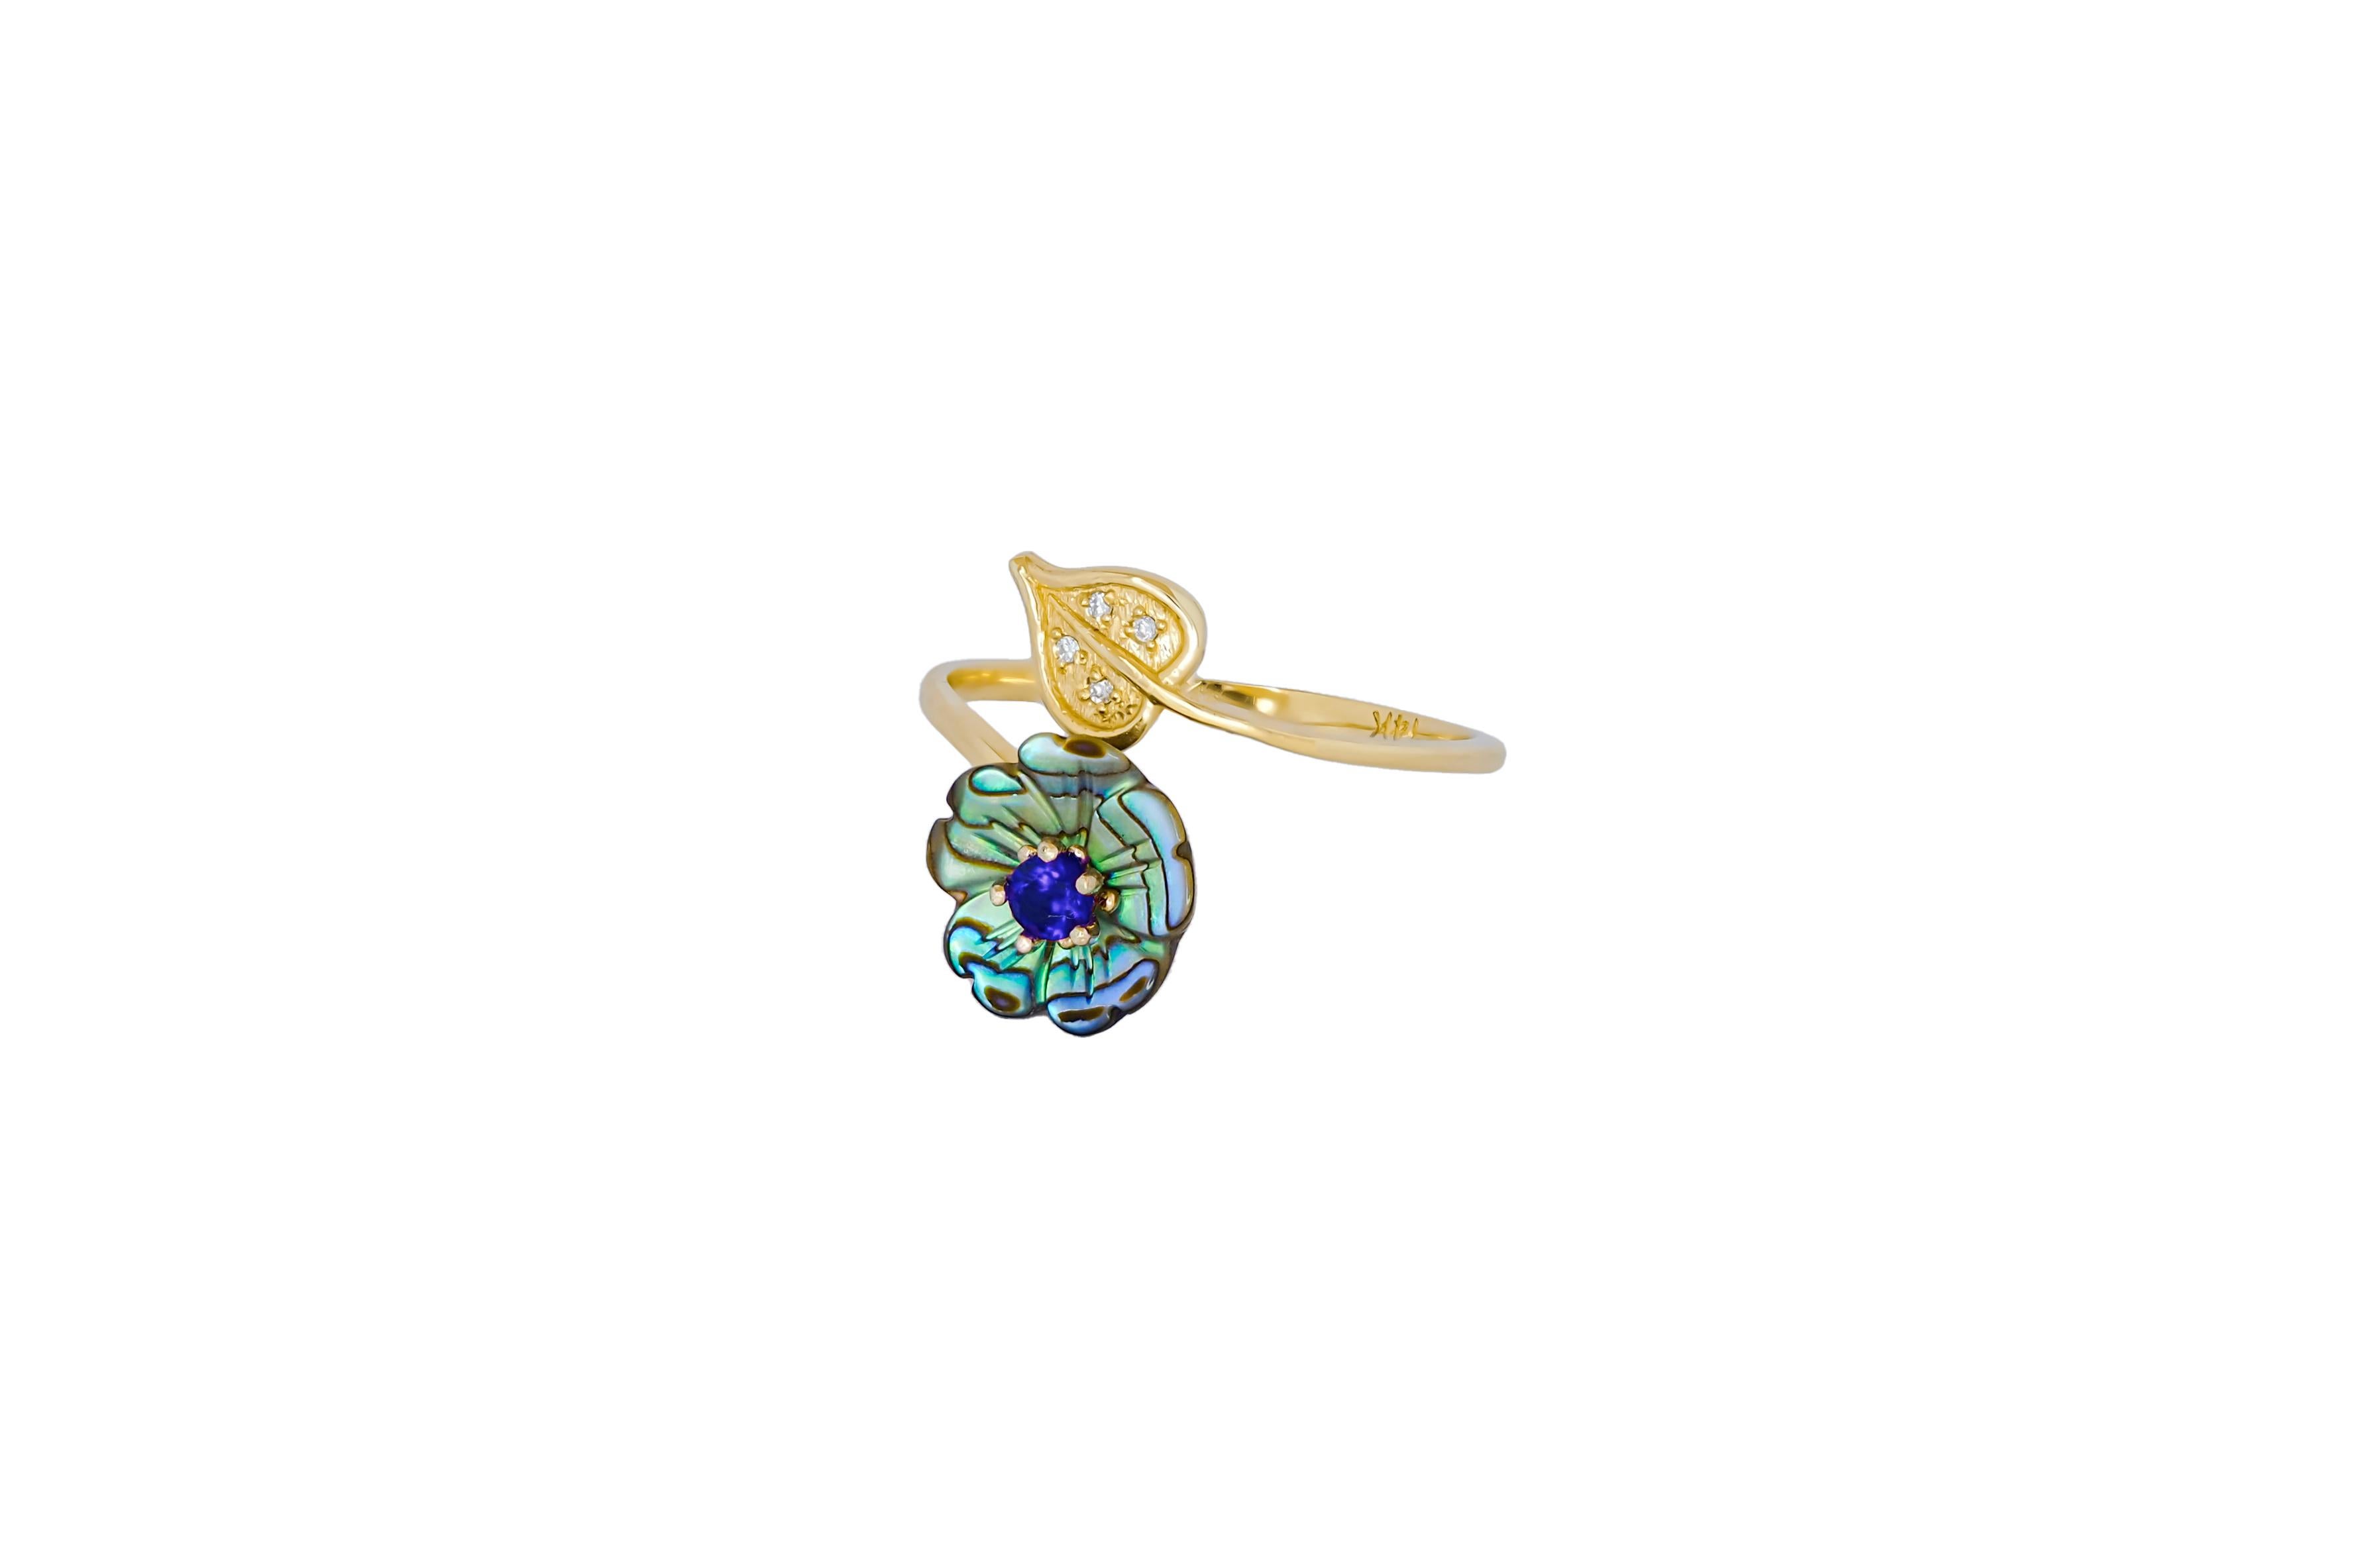 For Sale:  Royal blue gemstone 14k  gold ring.  6